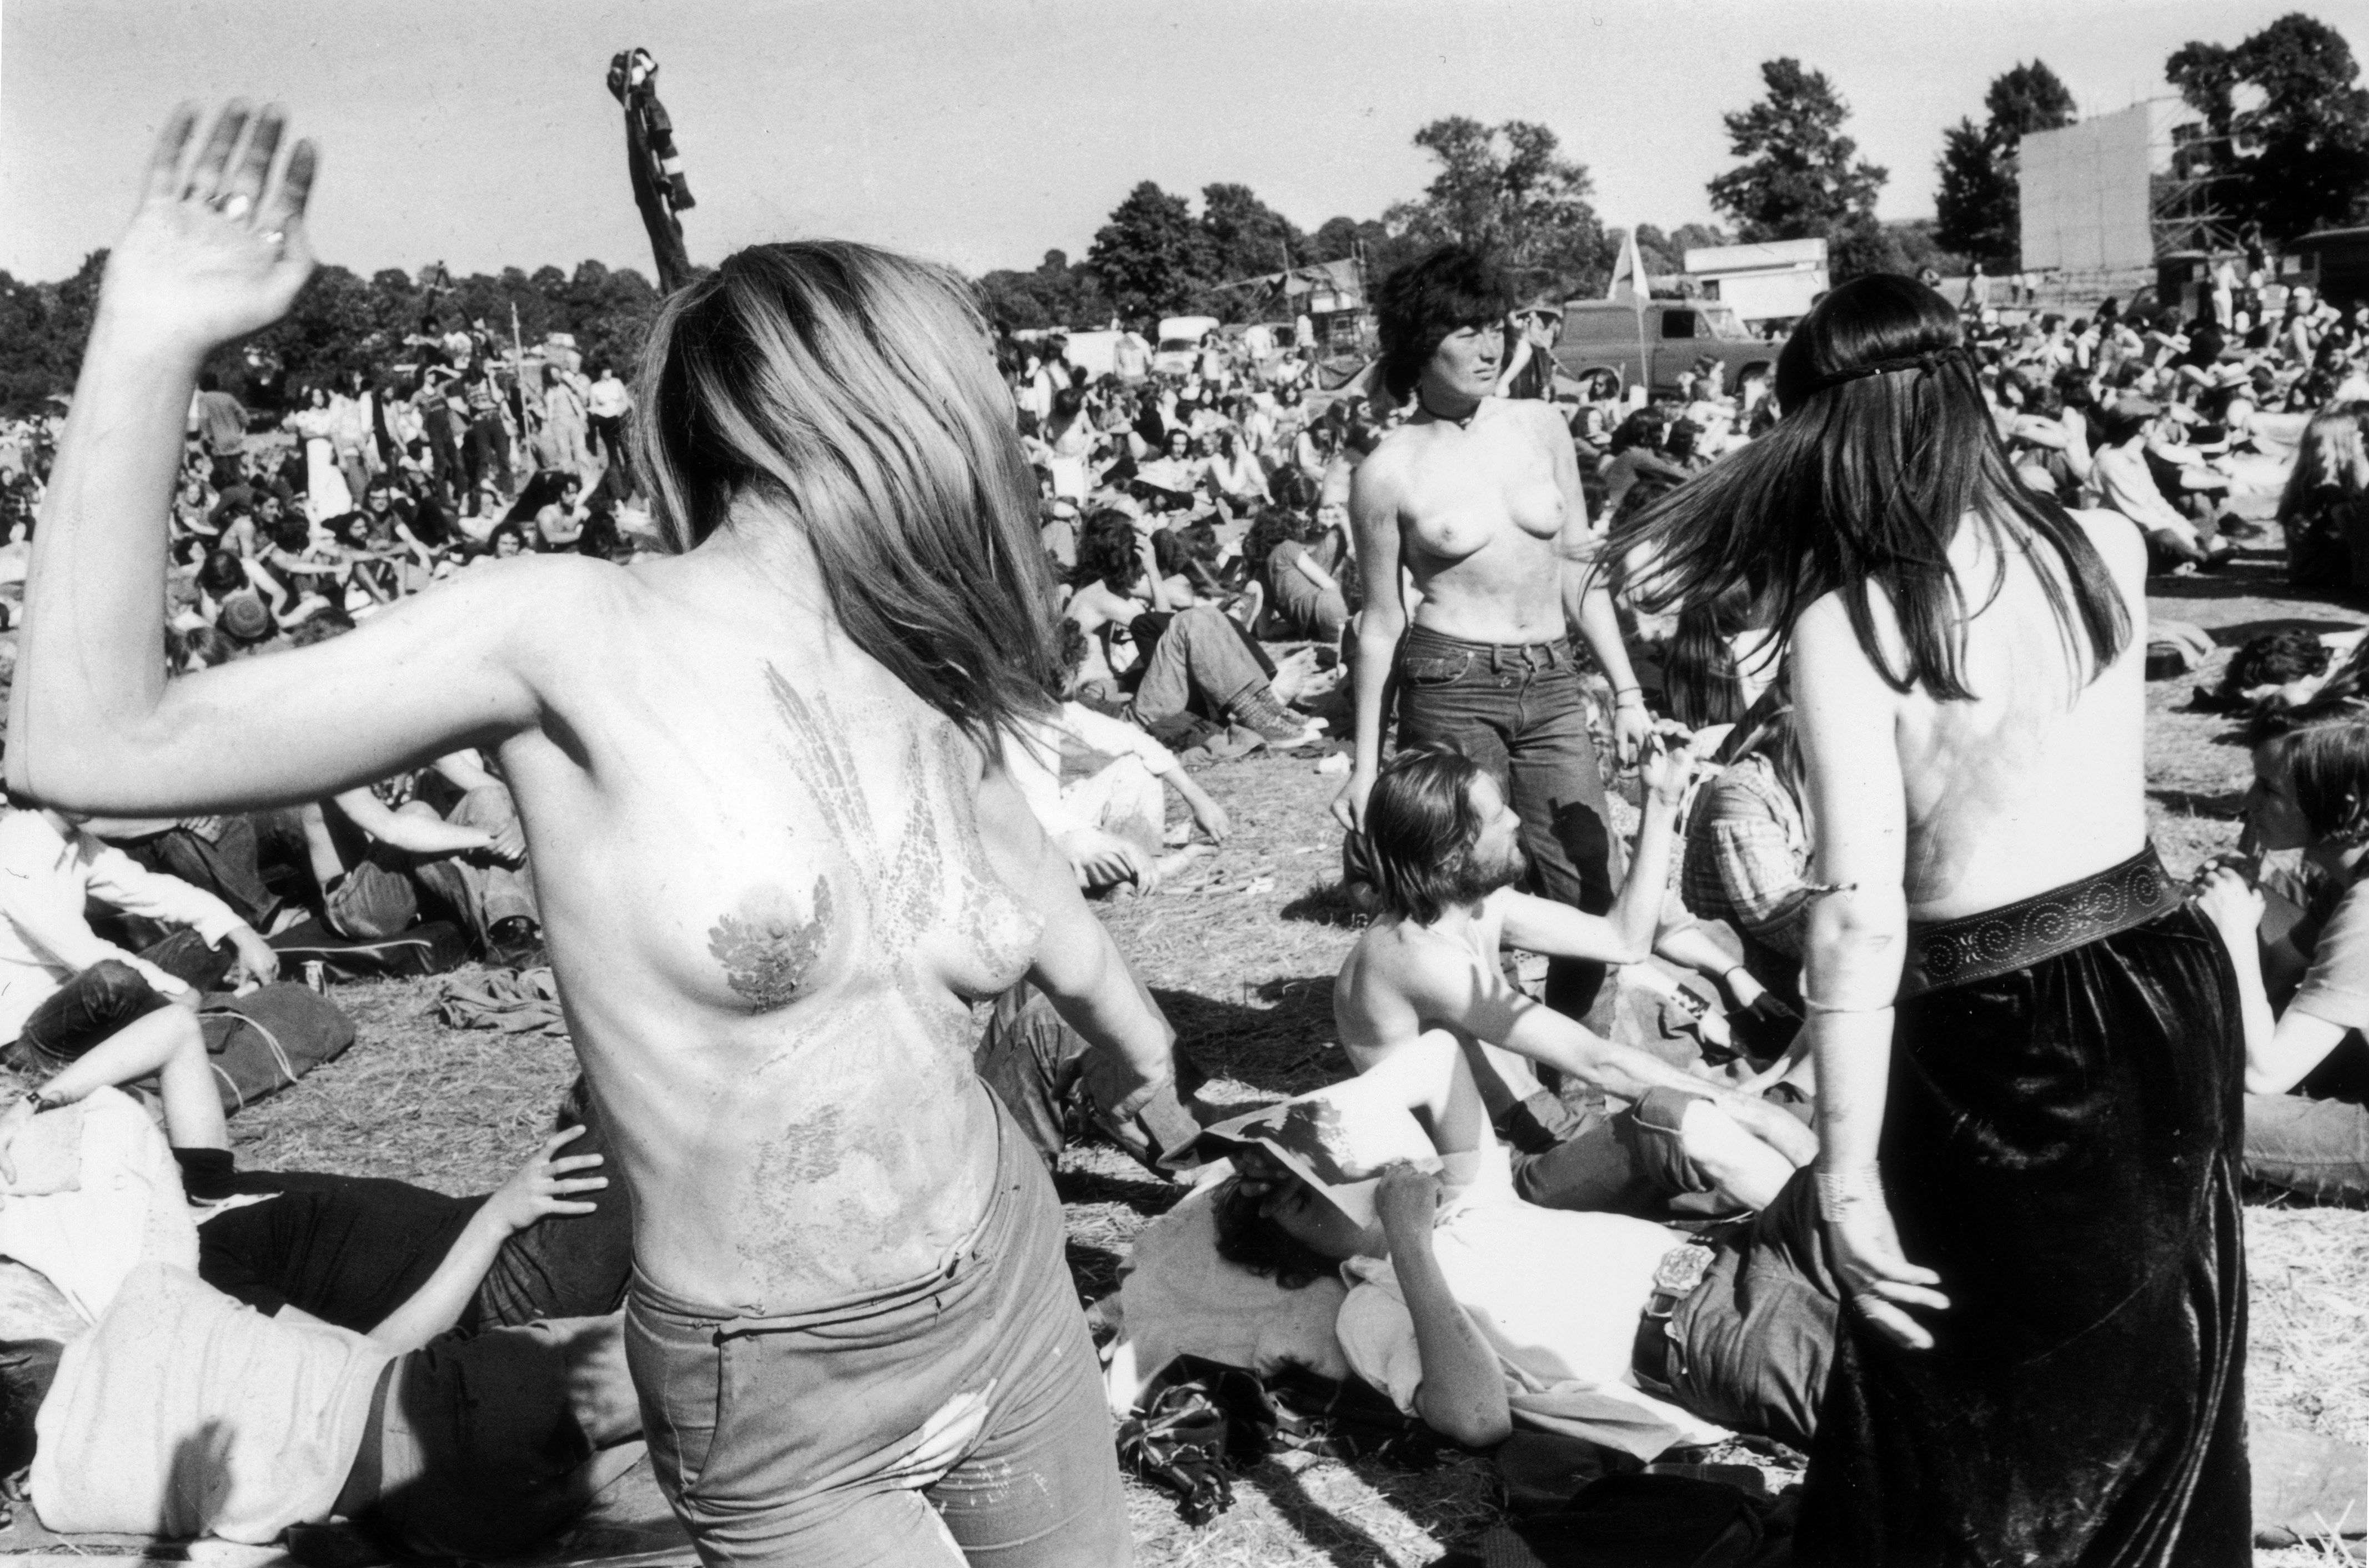 Woodstock - polish festival girl flashing tits. 